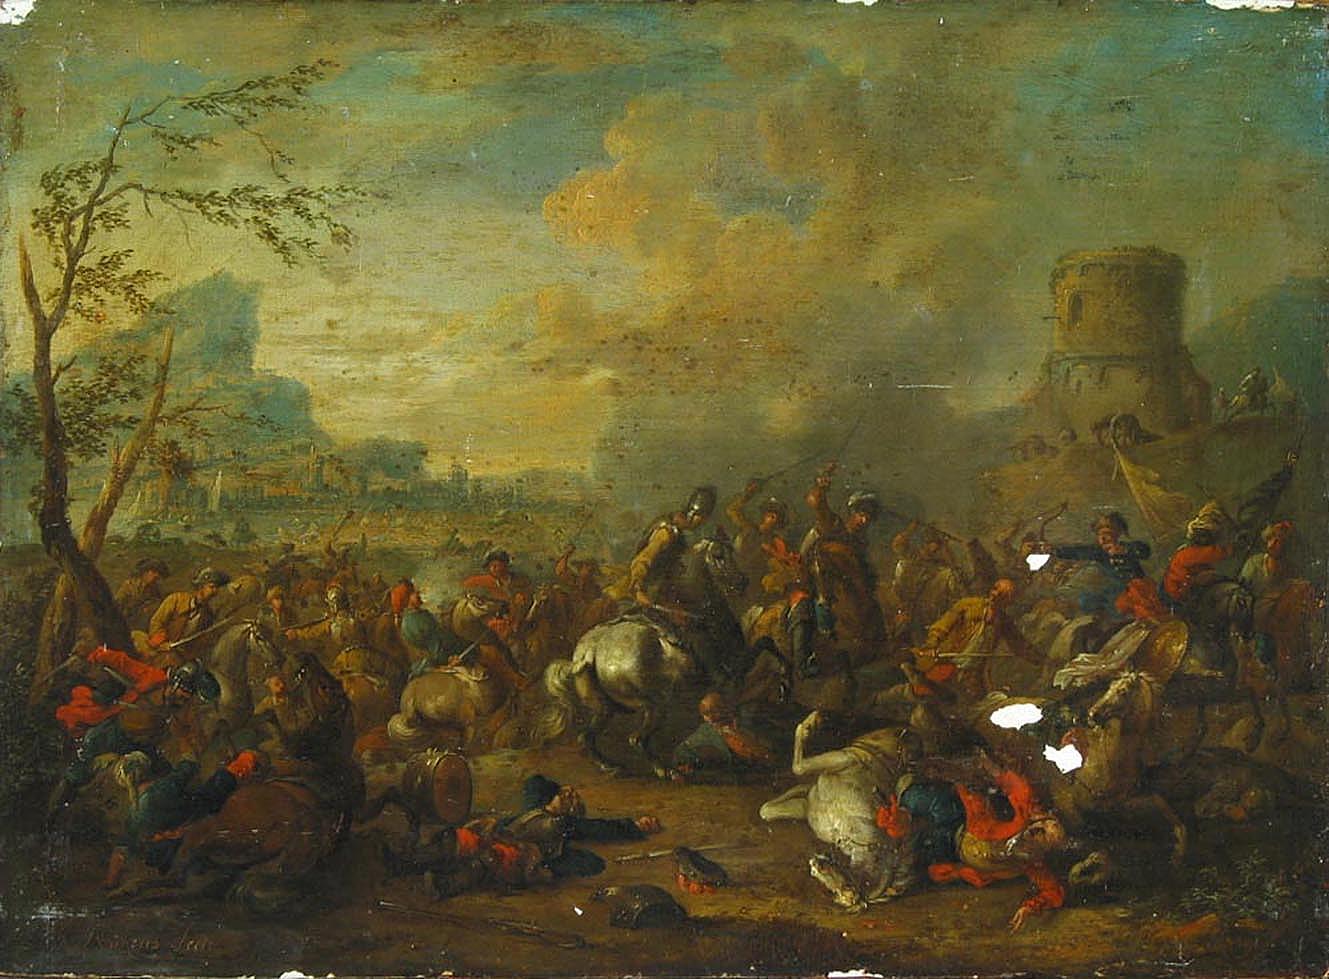 Арнольд Франс Рубенс. "Сражение". Между 1709-1719. Эрмитаж, Санкт-Петербург.